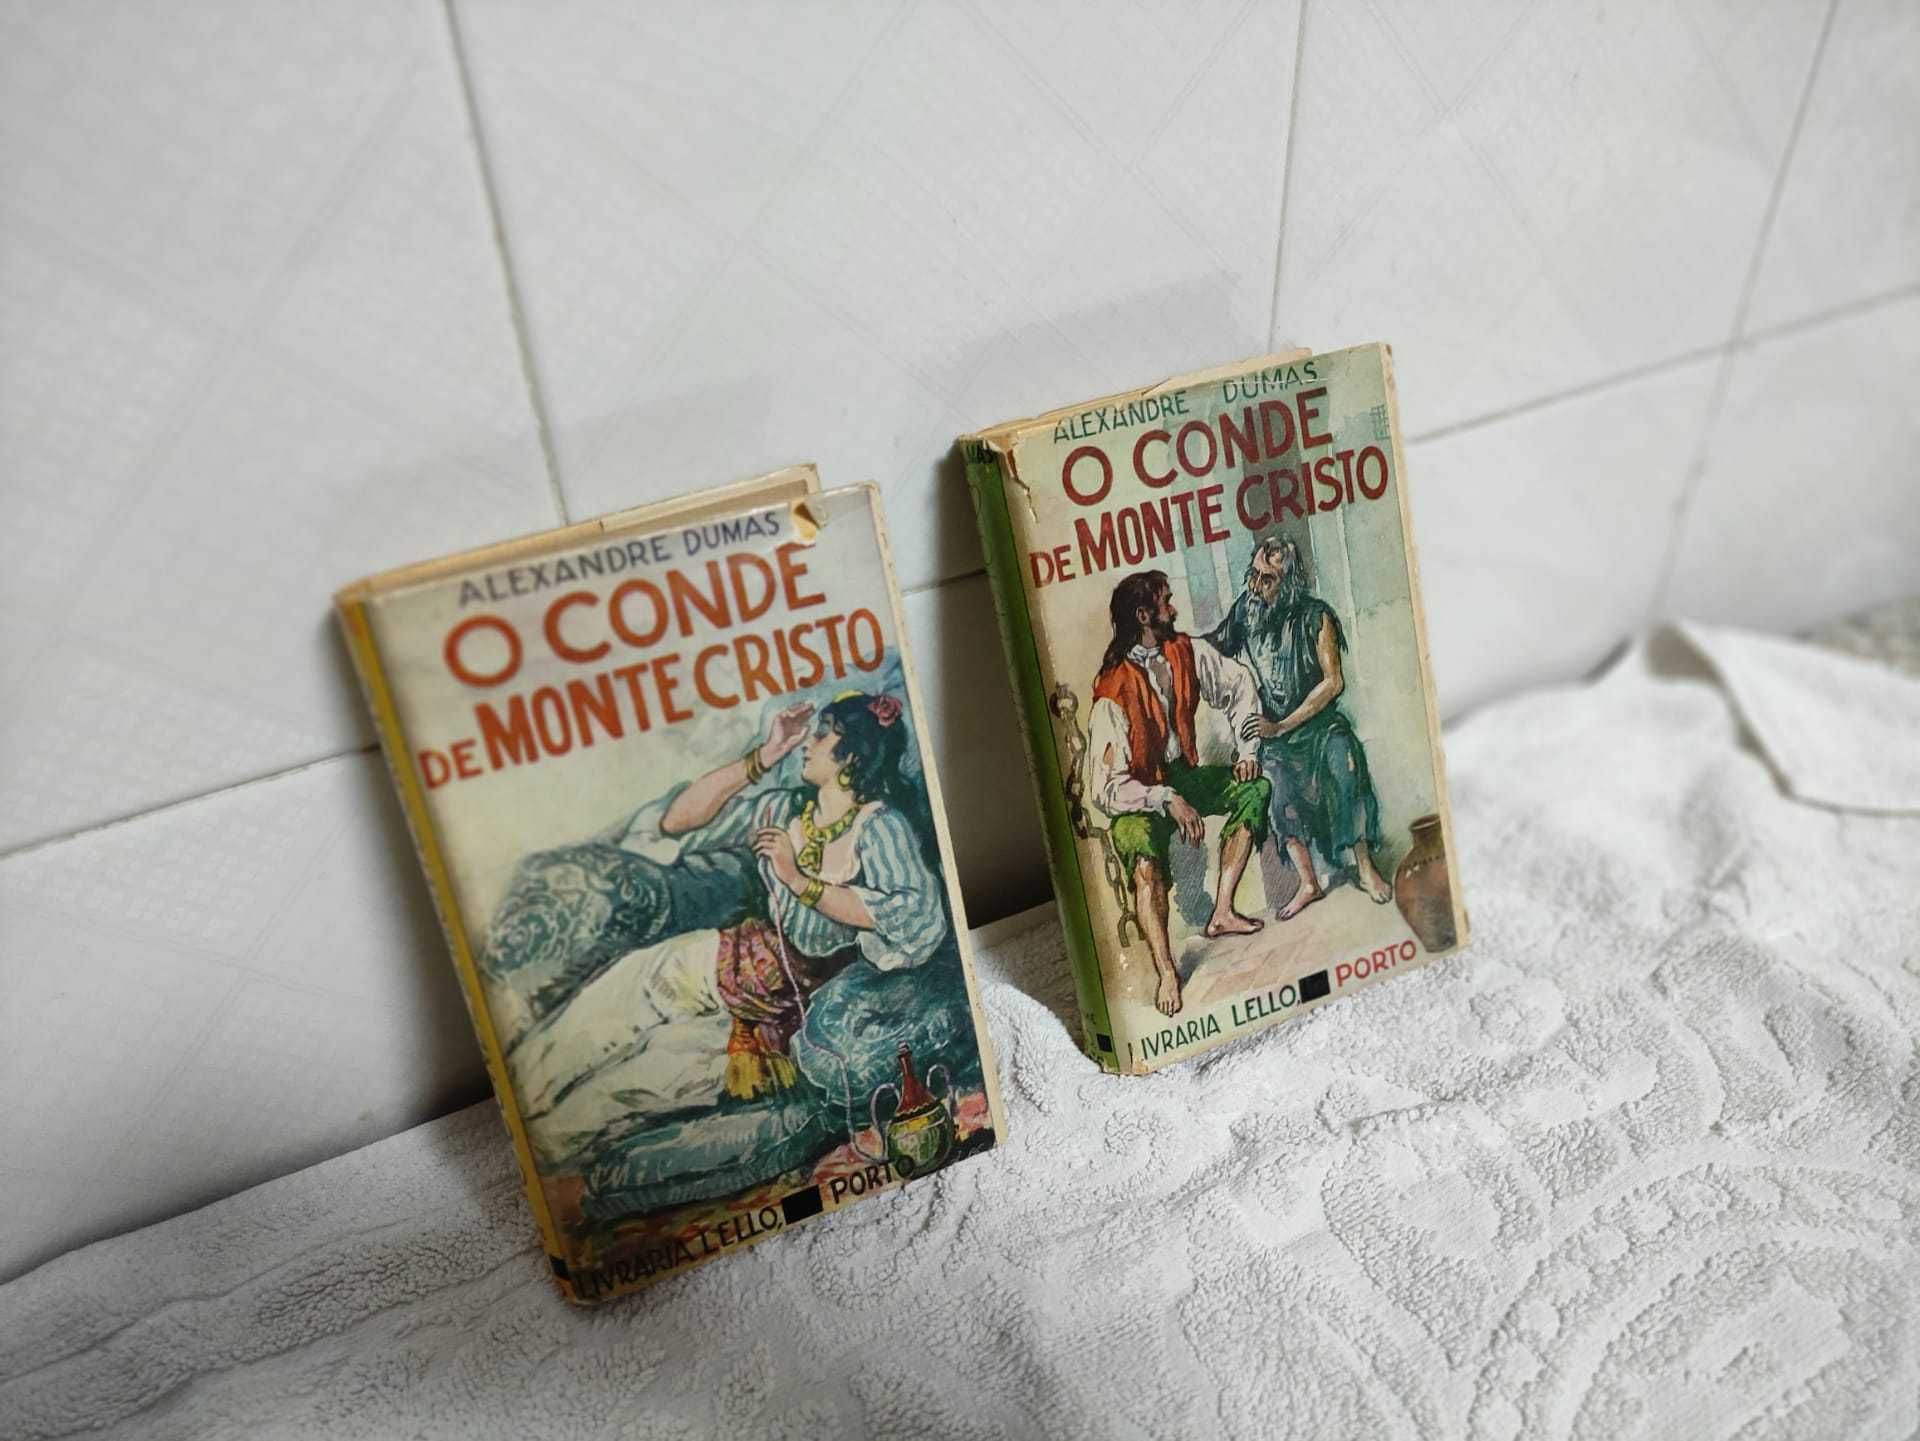 Conde de Monte Cristo de Alexandre Dumas, Livraria Lello